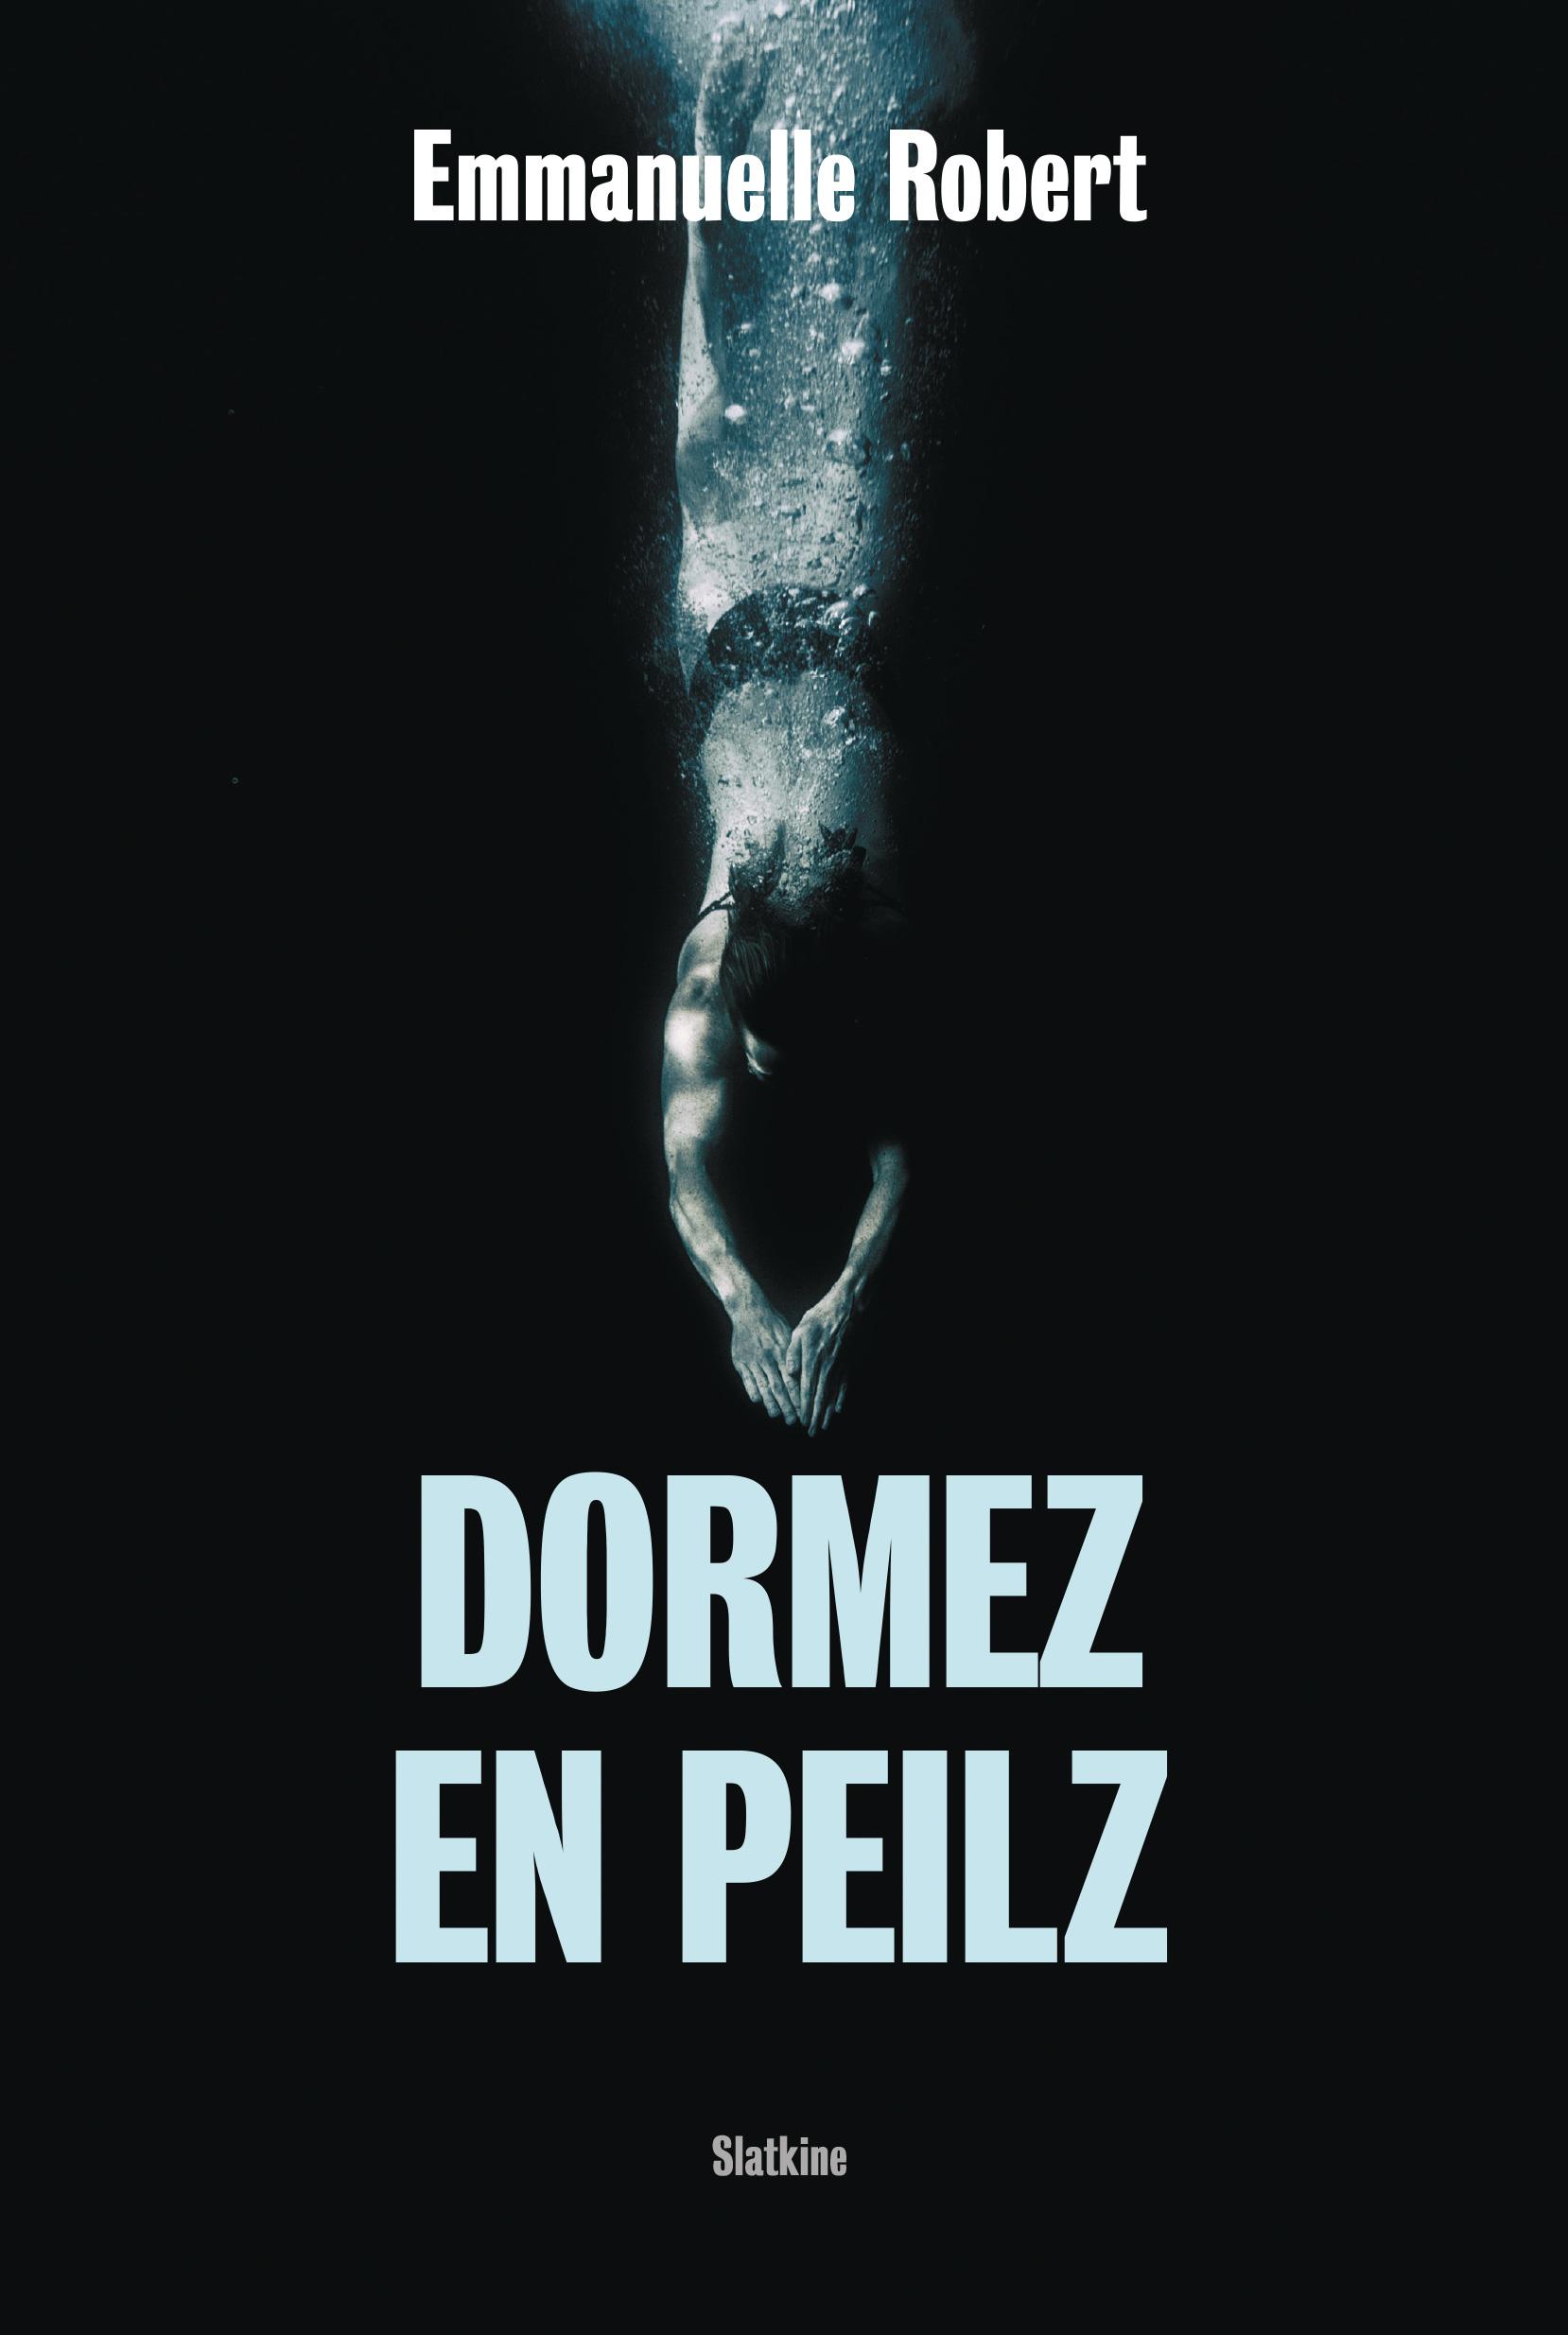 La couverture du roman "Dormez en Peilz" d'Emmanuelle Robert. [Slatkine]